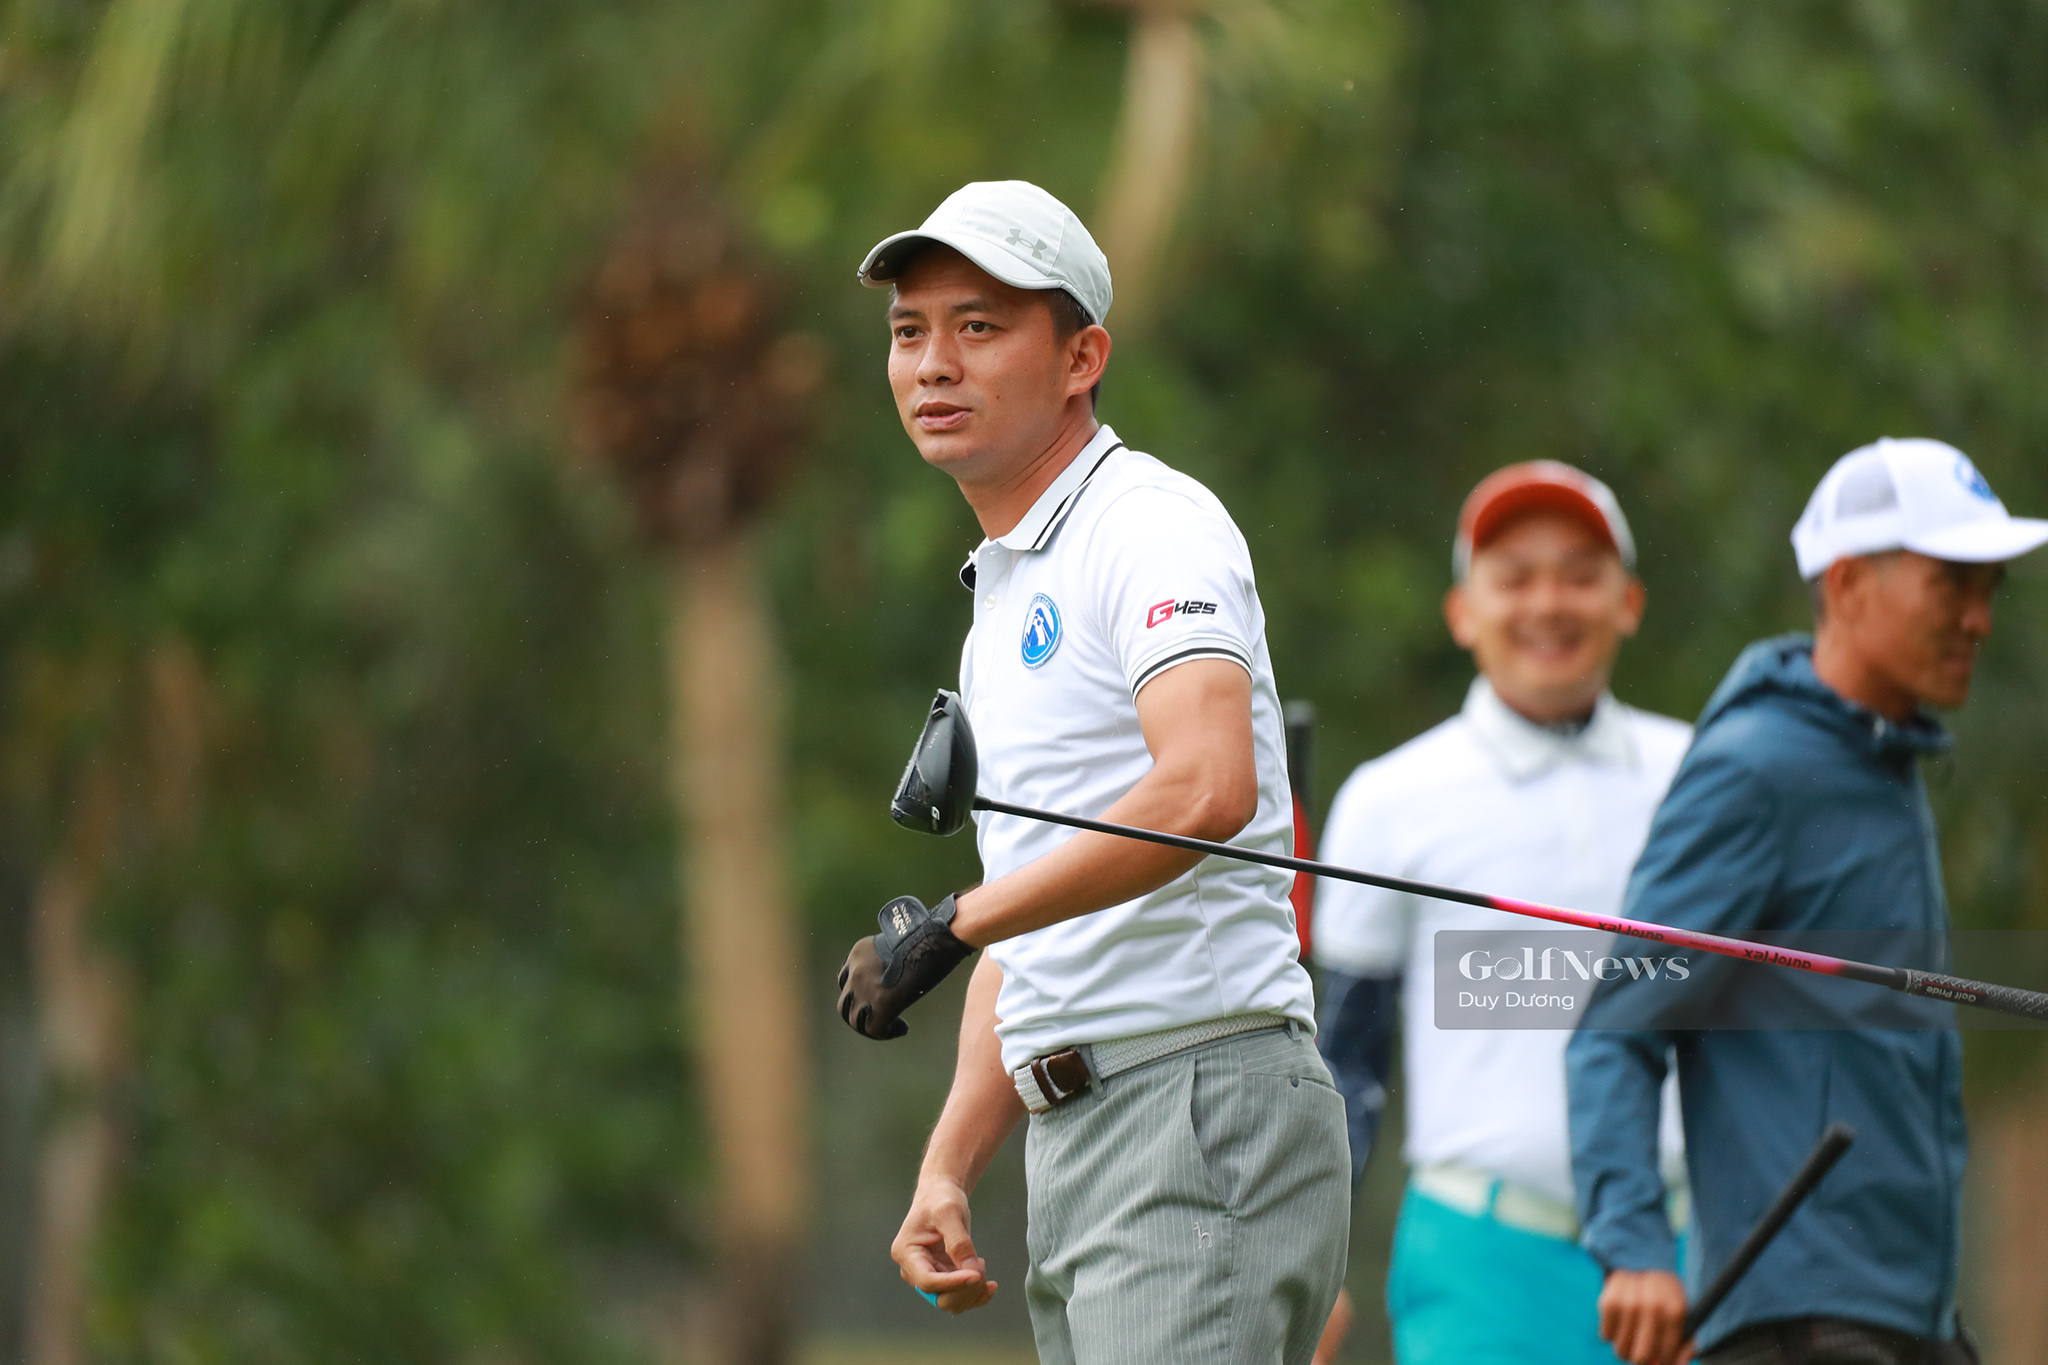 Hấp dẫn những cú đánh ở giải Tri ân của hội golf Đà Nẵng